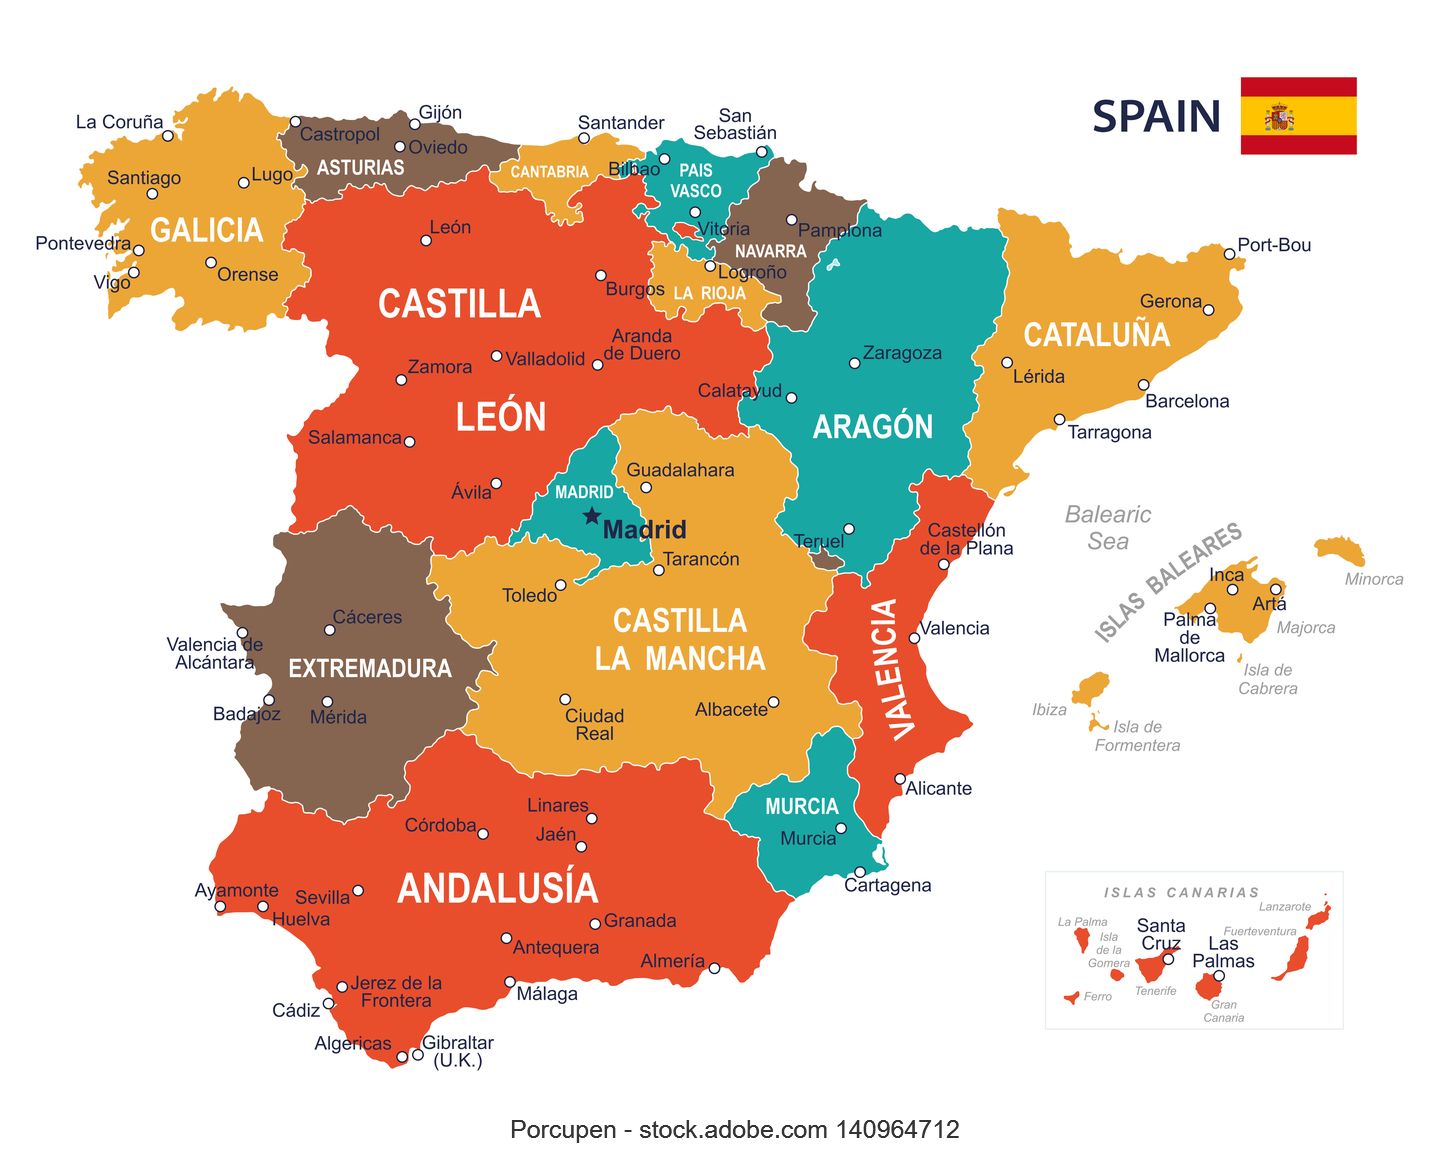 Map of Spain's autonomous communities (regions)